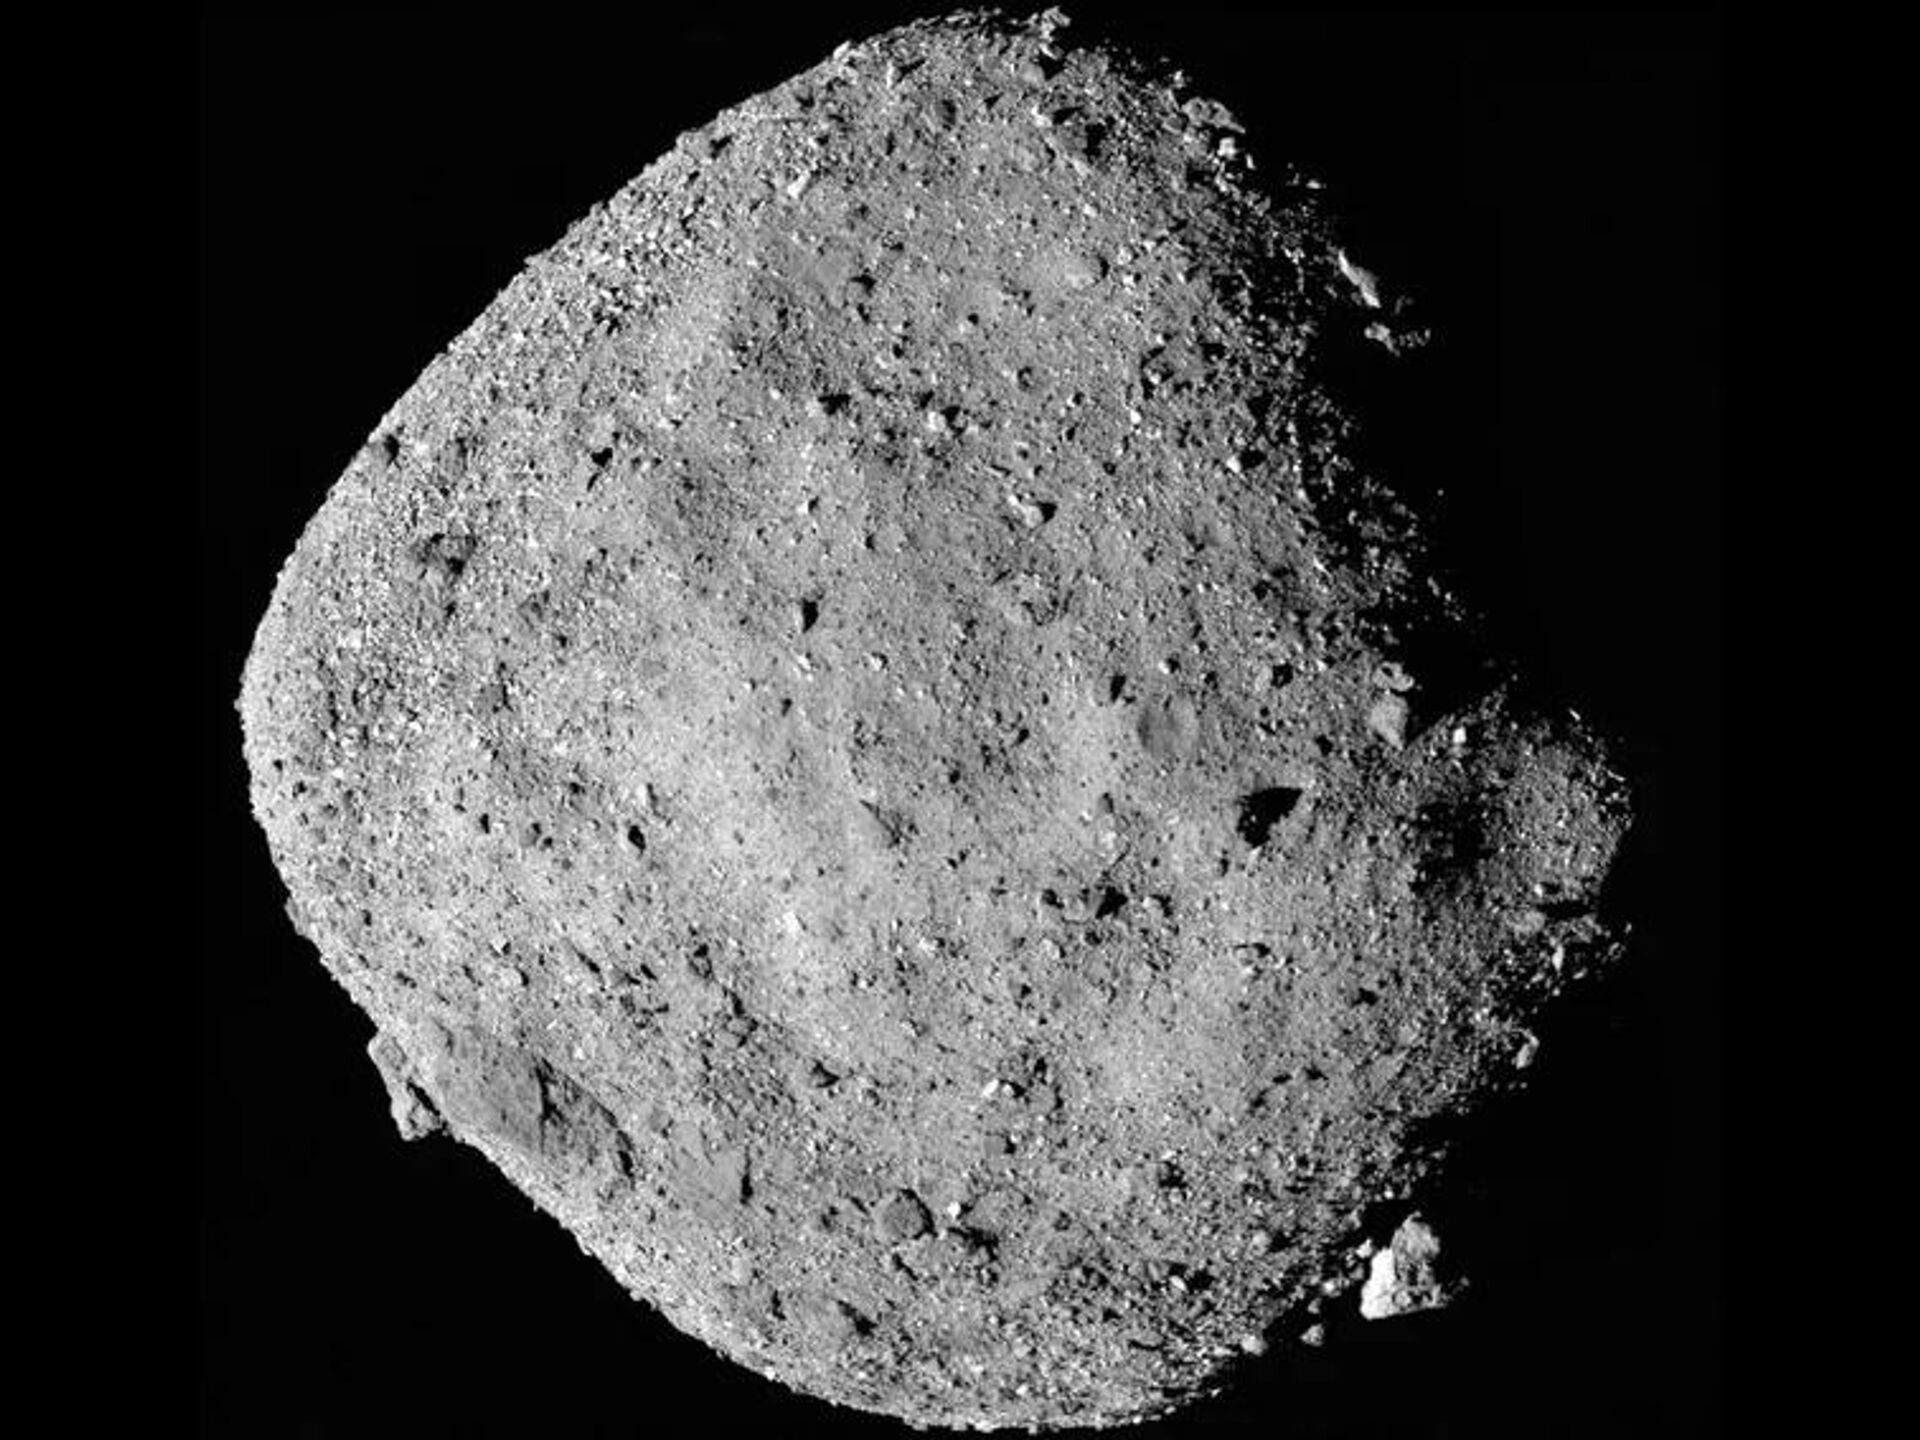 Он не мог прилететь сам. Состав астероида около Земли не похож на естественный Солнечной, образцы, Землю, астероид, грунта, астероида, выяснилось, части, кометы Кадры, астероиды, появляются, обычно, Здесь, системы, Между, внешней, минимум, гдето, сформировался, показал